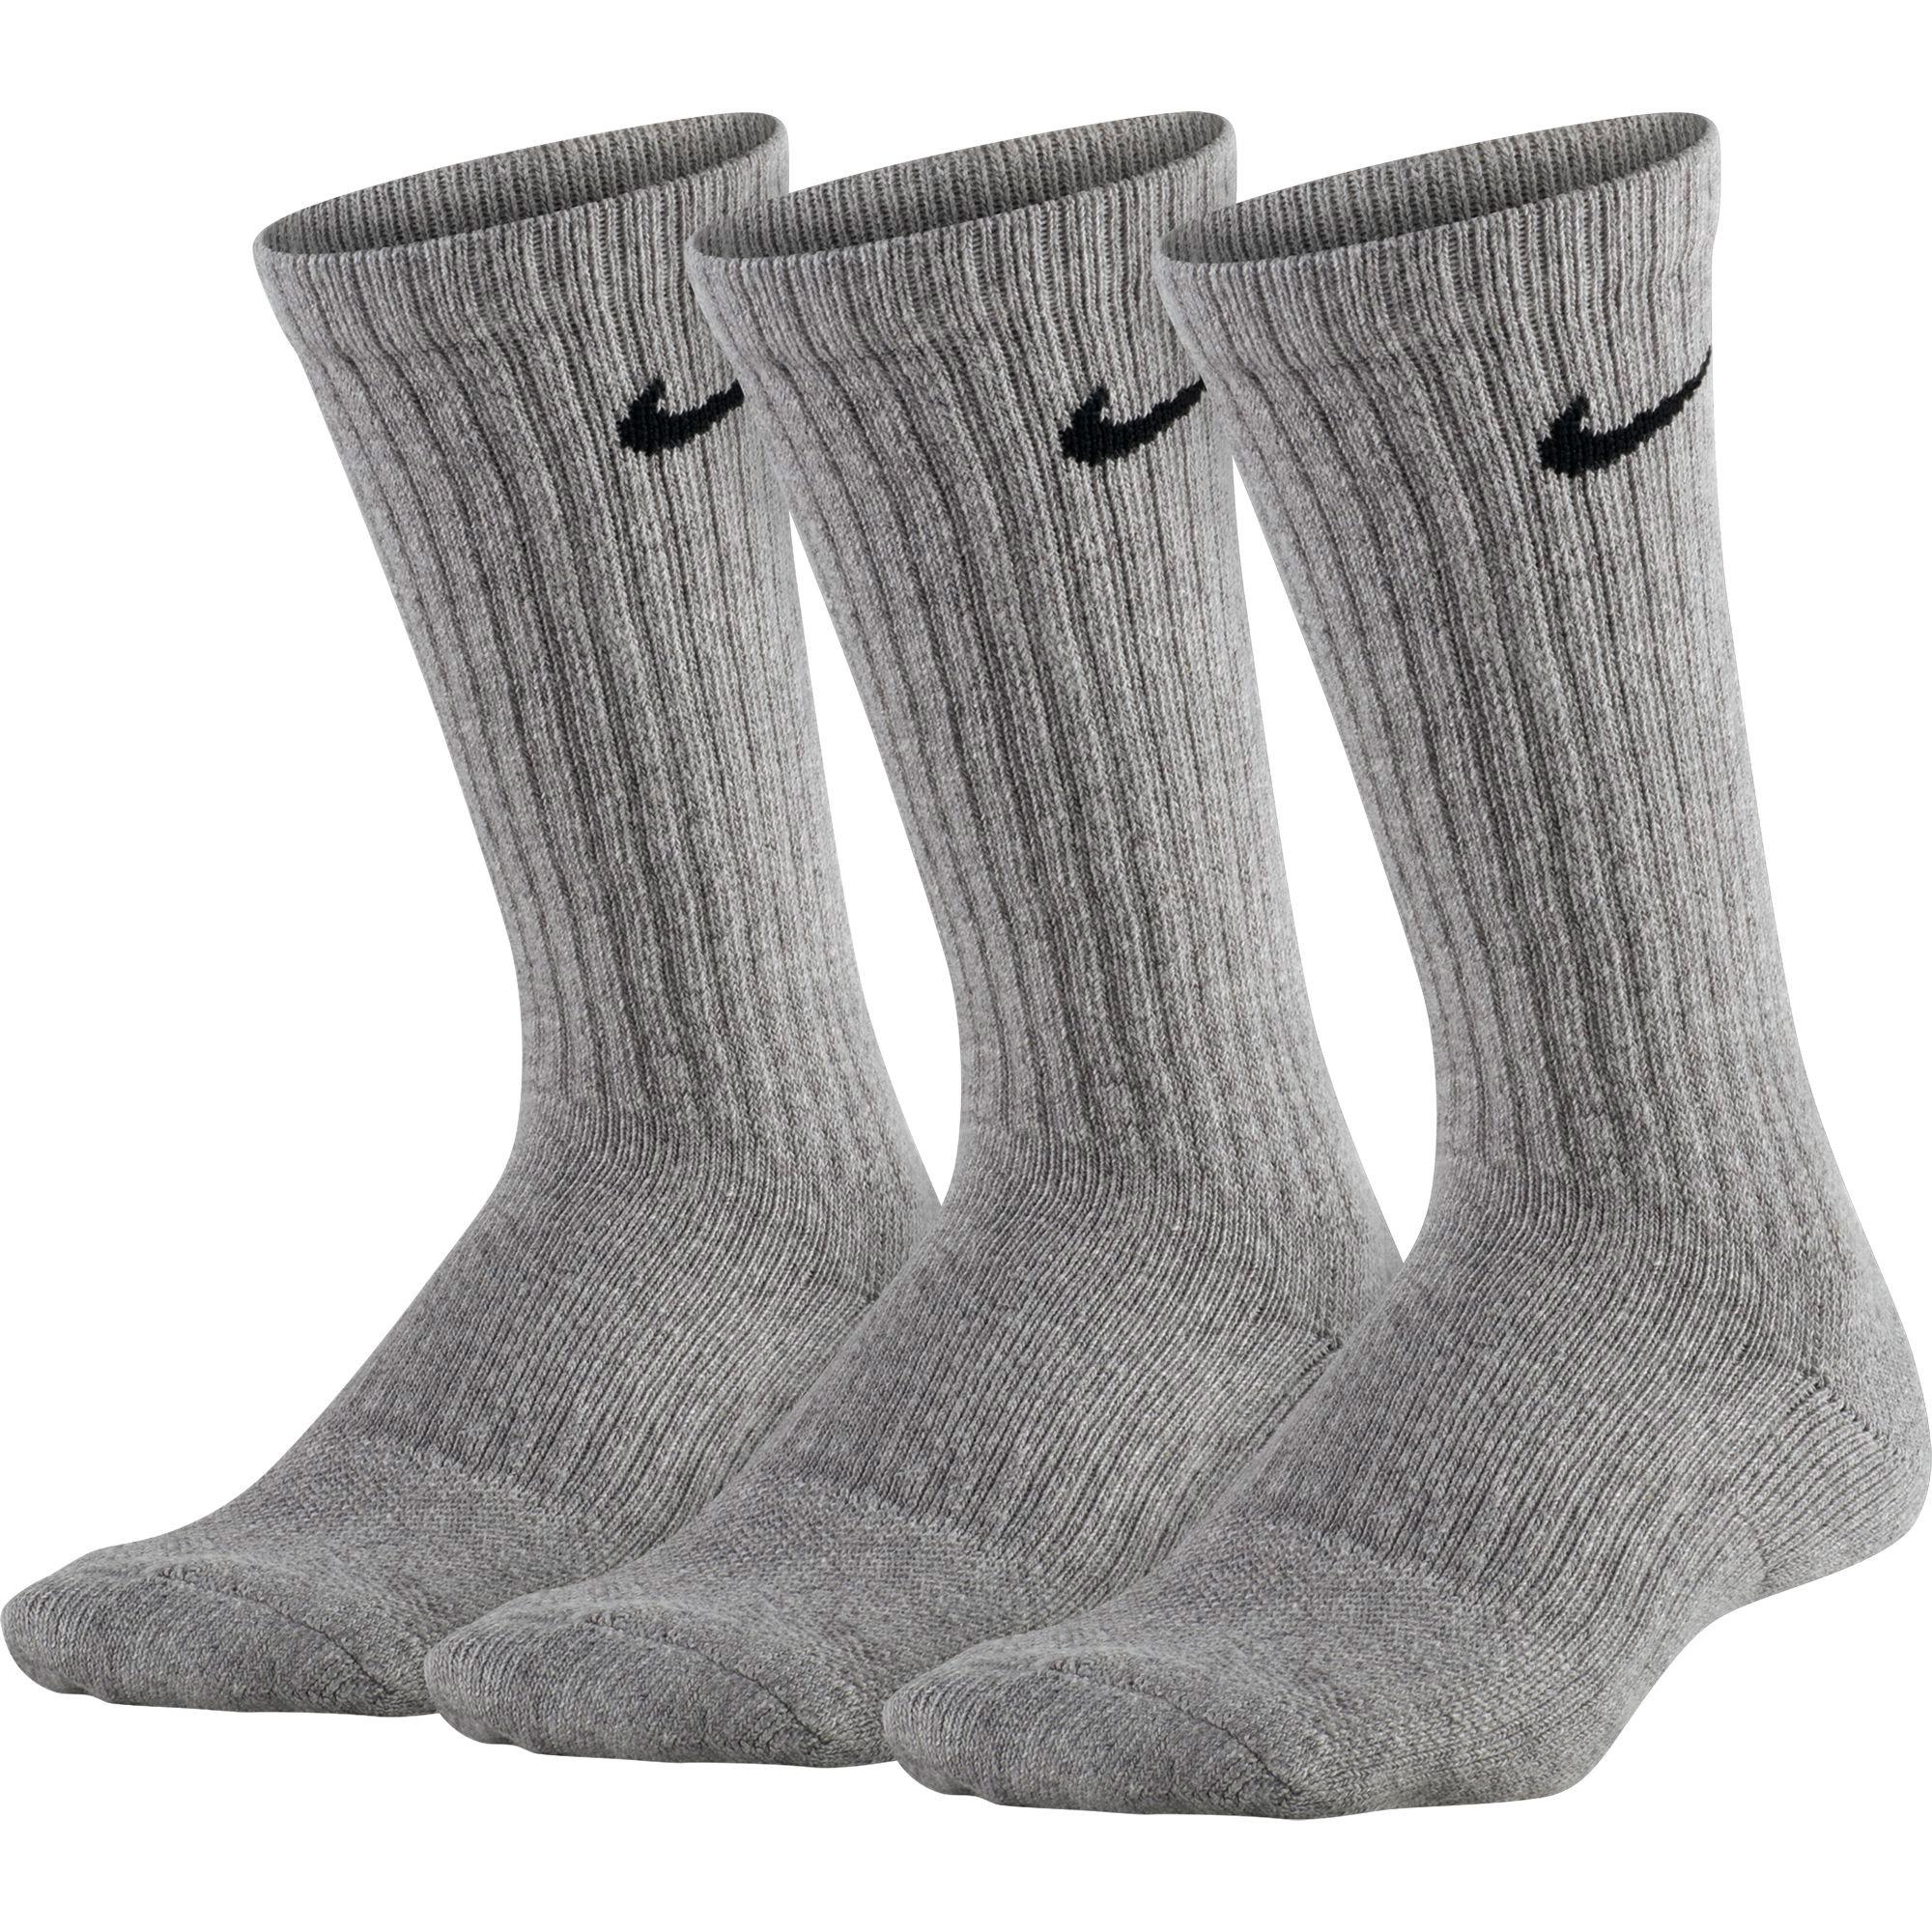 black and grey nike socks